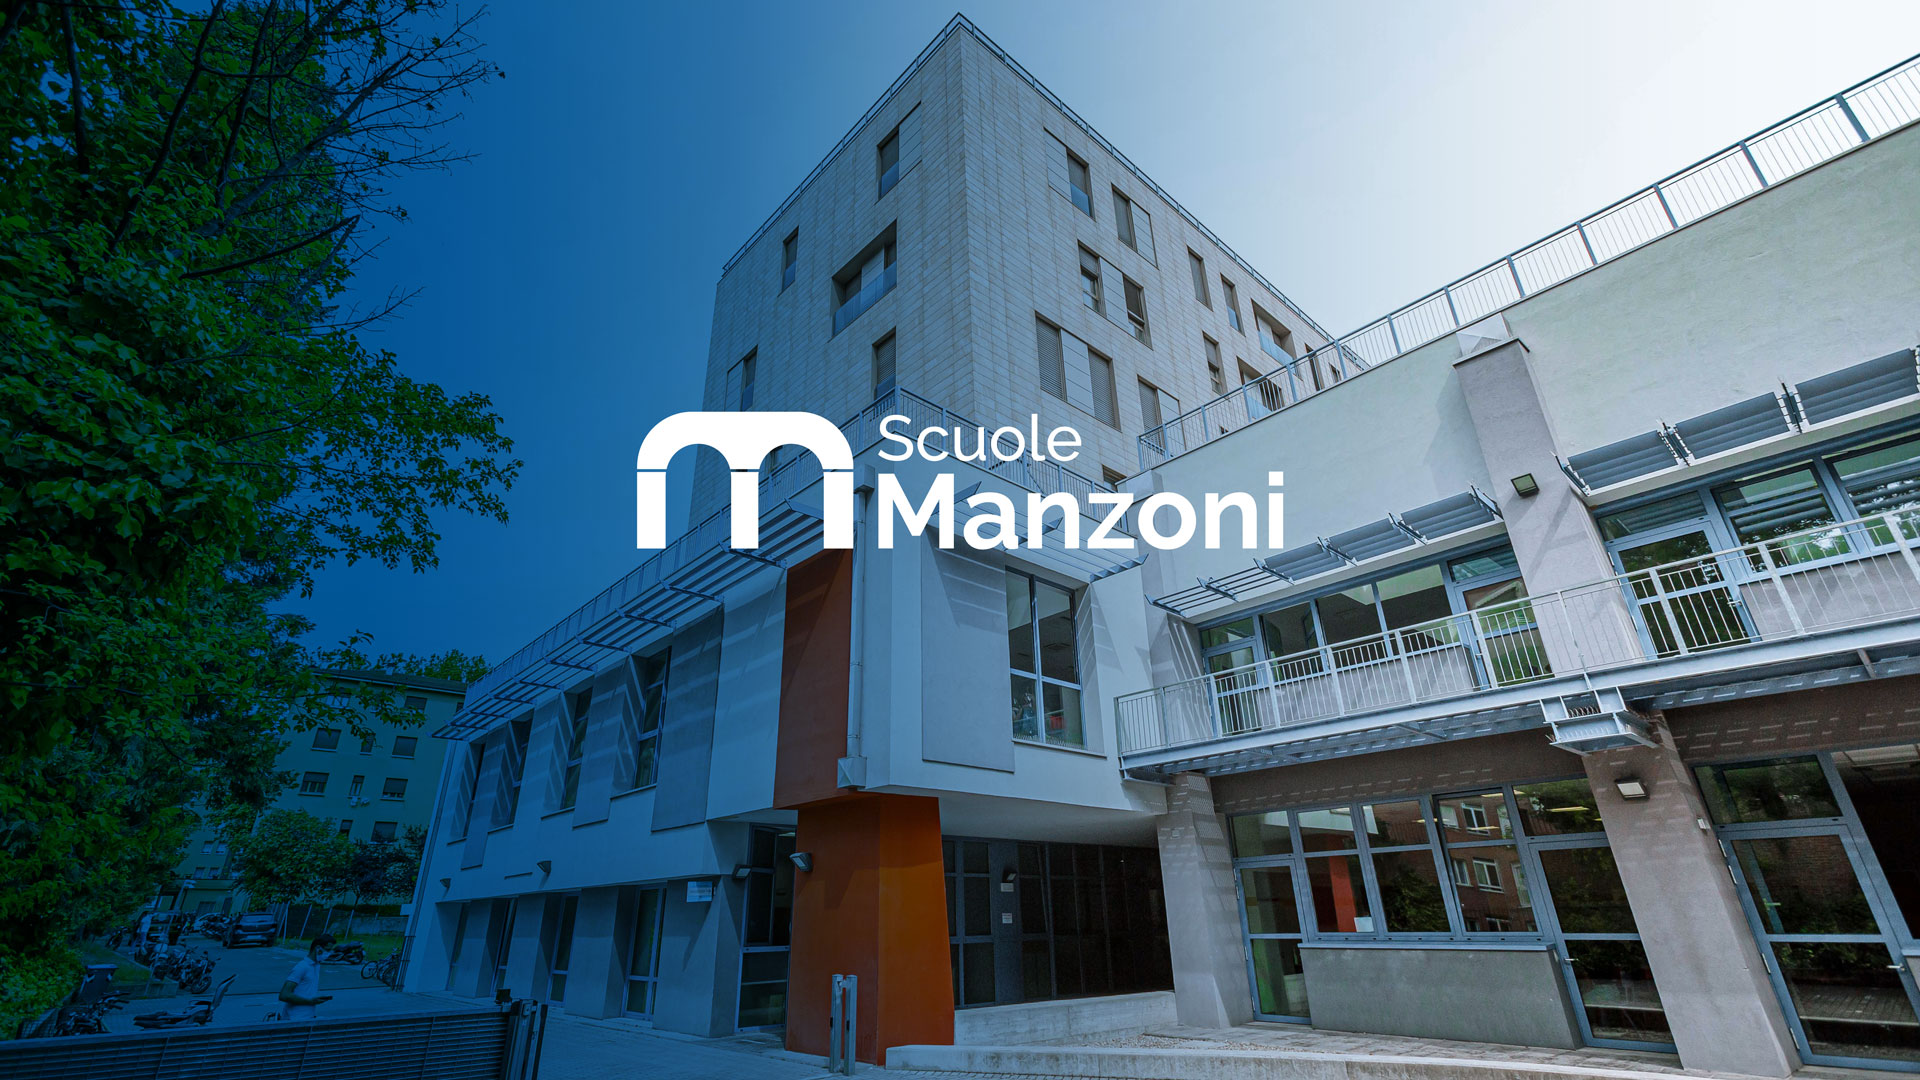 Scuole Manzoni – Website and Reportage